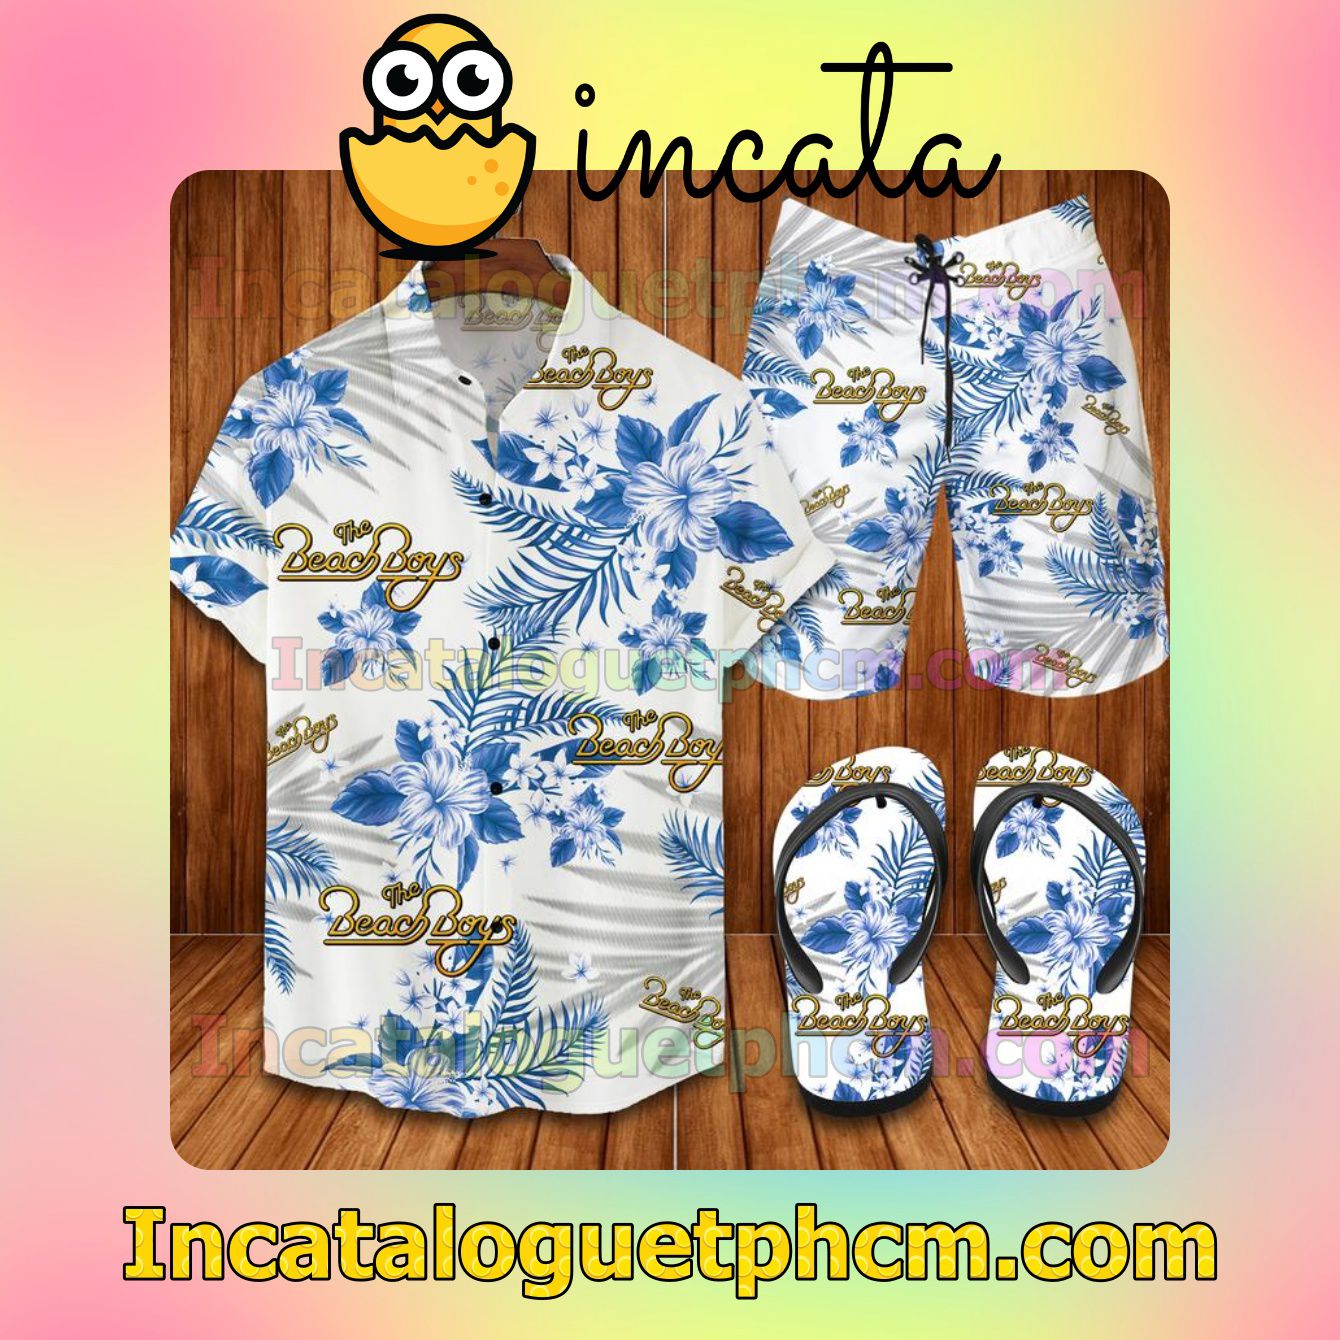 The Beach Boys Aloha Shirt And Shorts